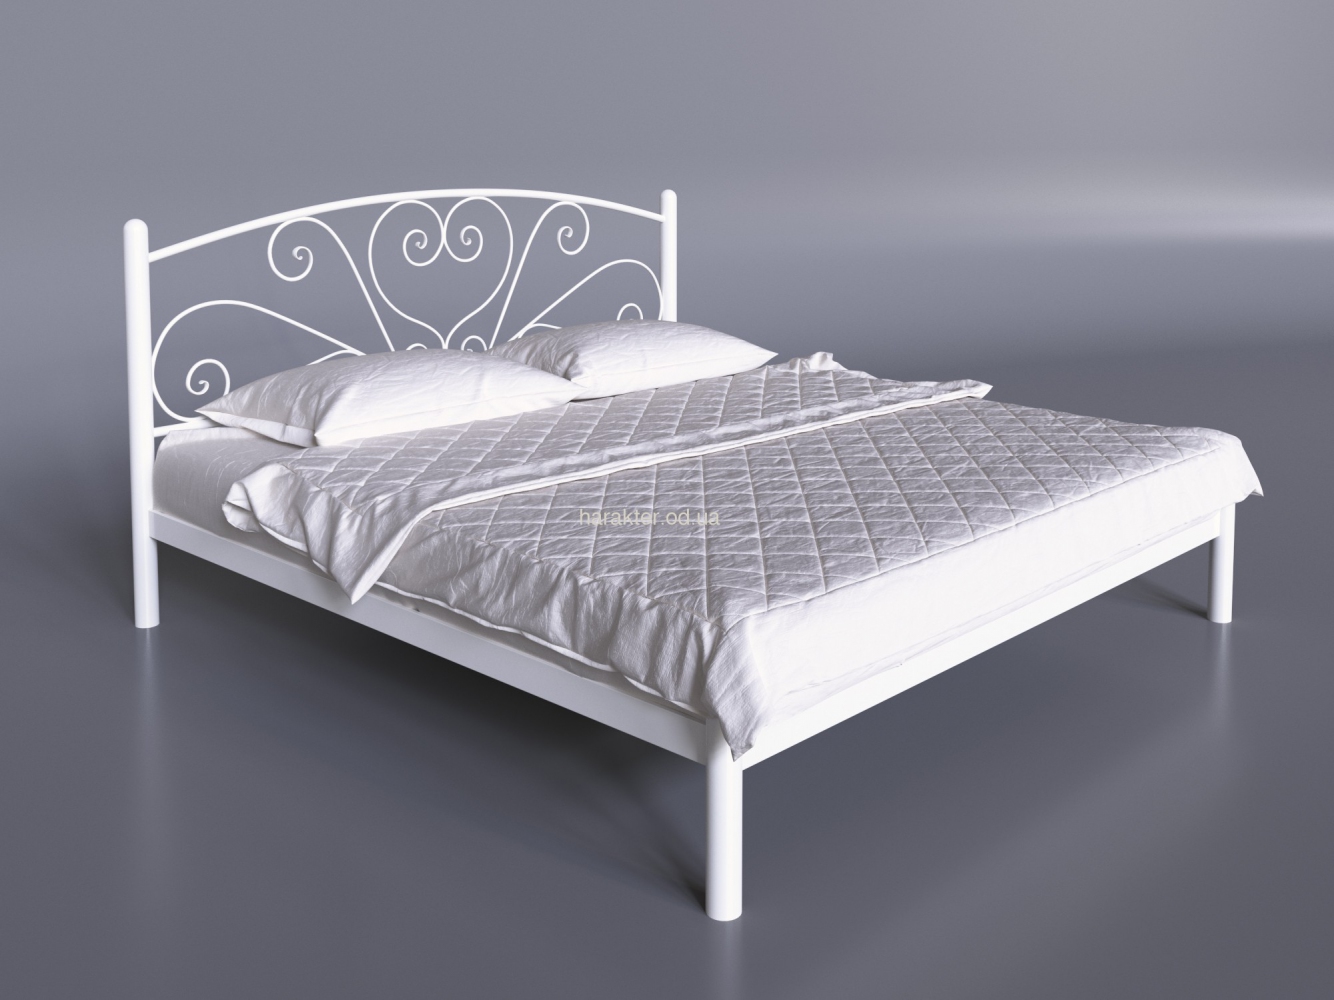 Металлическая двуспальная кровать Карисса те / Кованые кровати, металлические / Мебельный магазин Характер. Купить мебель и декор в Одессе.